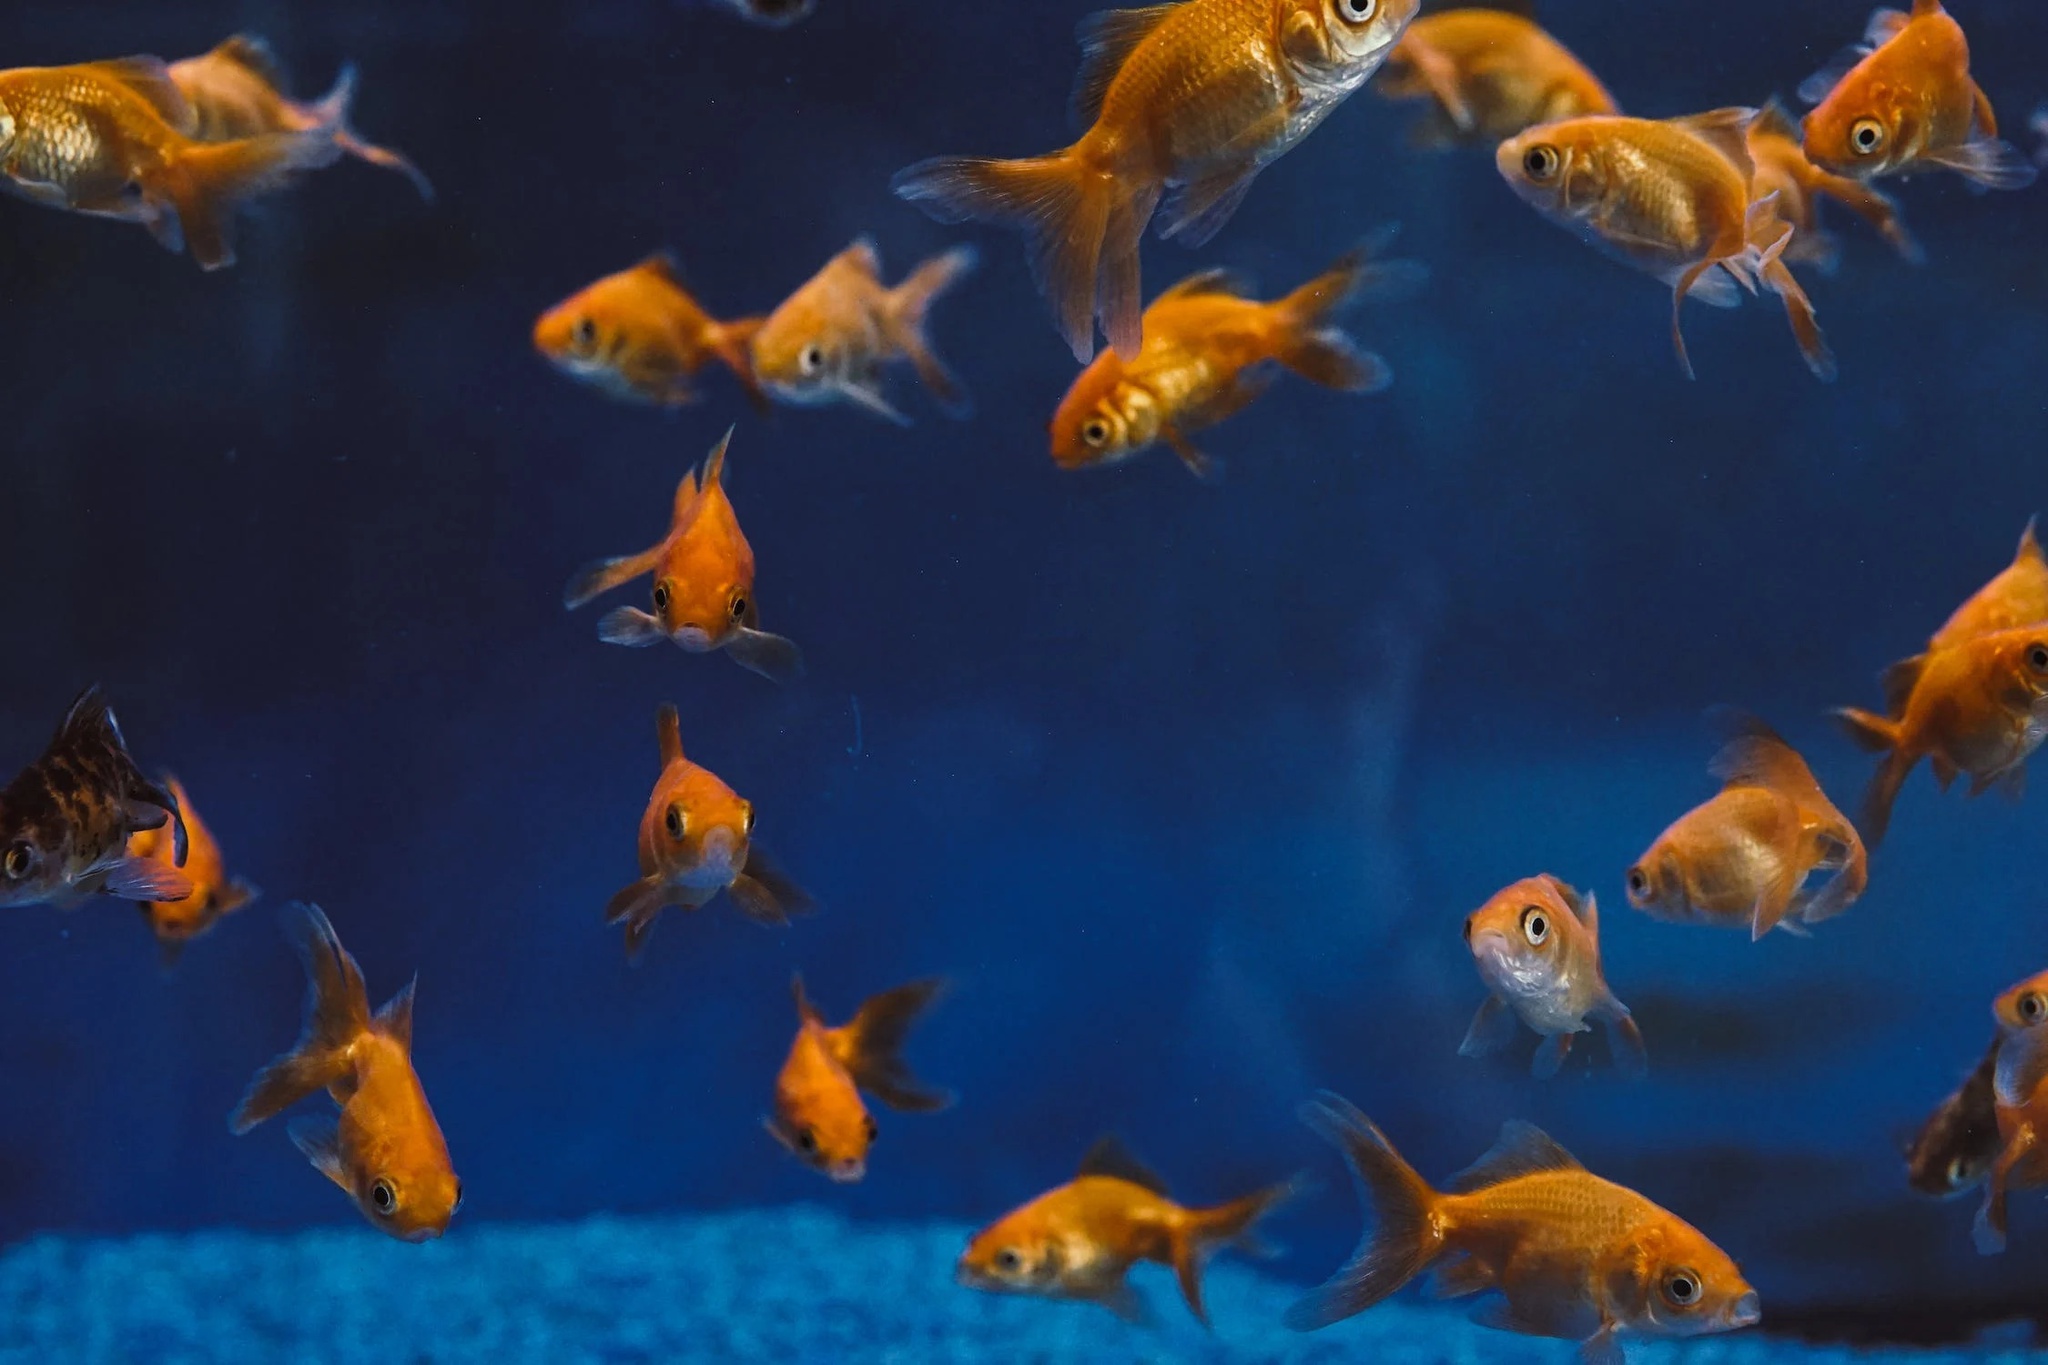 Kanada will Goldfische, die außerhalb von Aquarien leben, ausmerzen.  „Sie fressen alles.“  Biodiversität